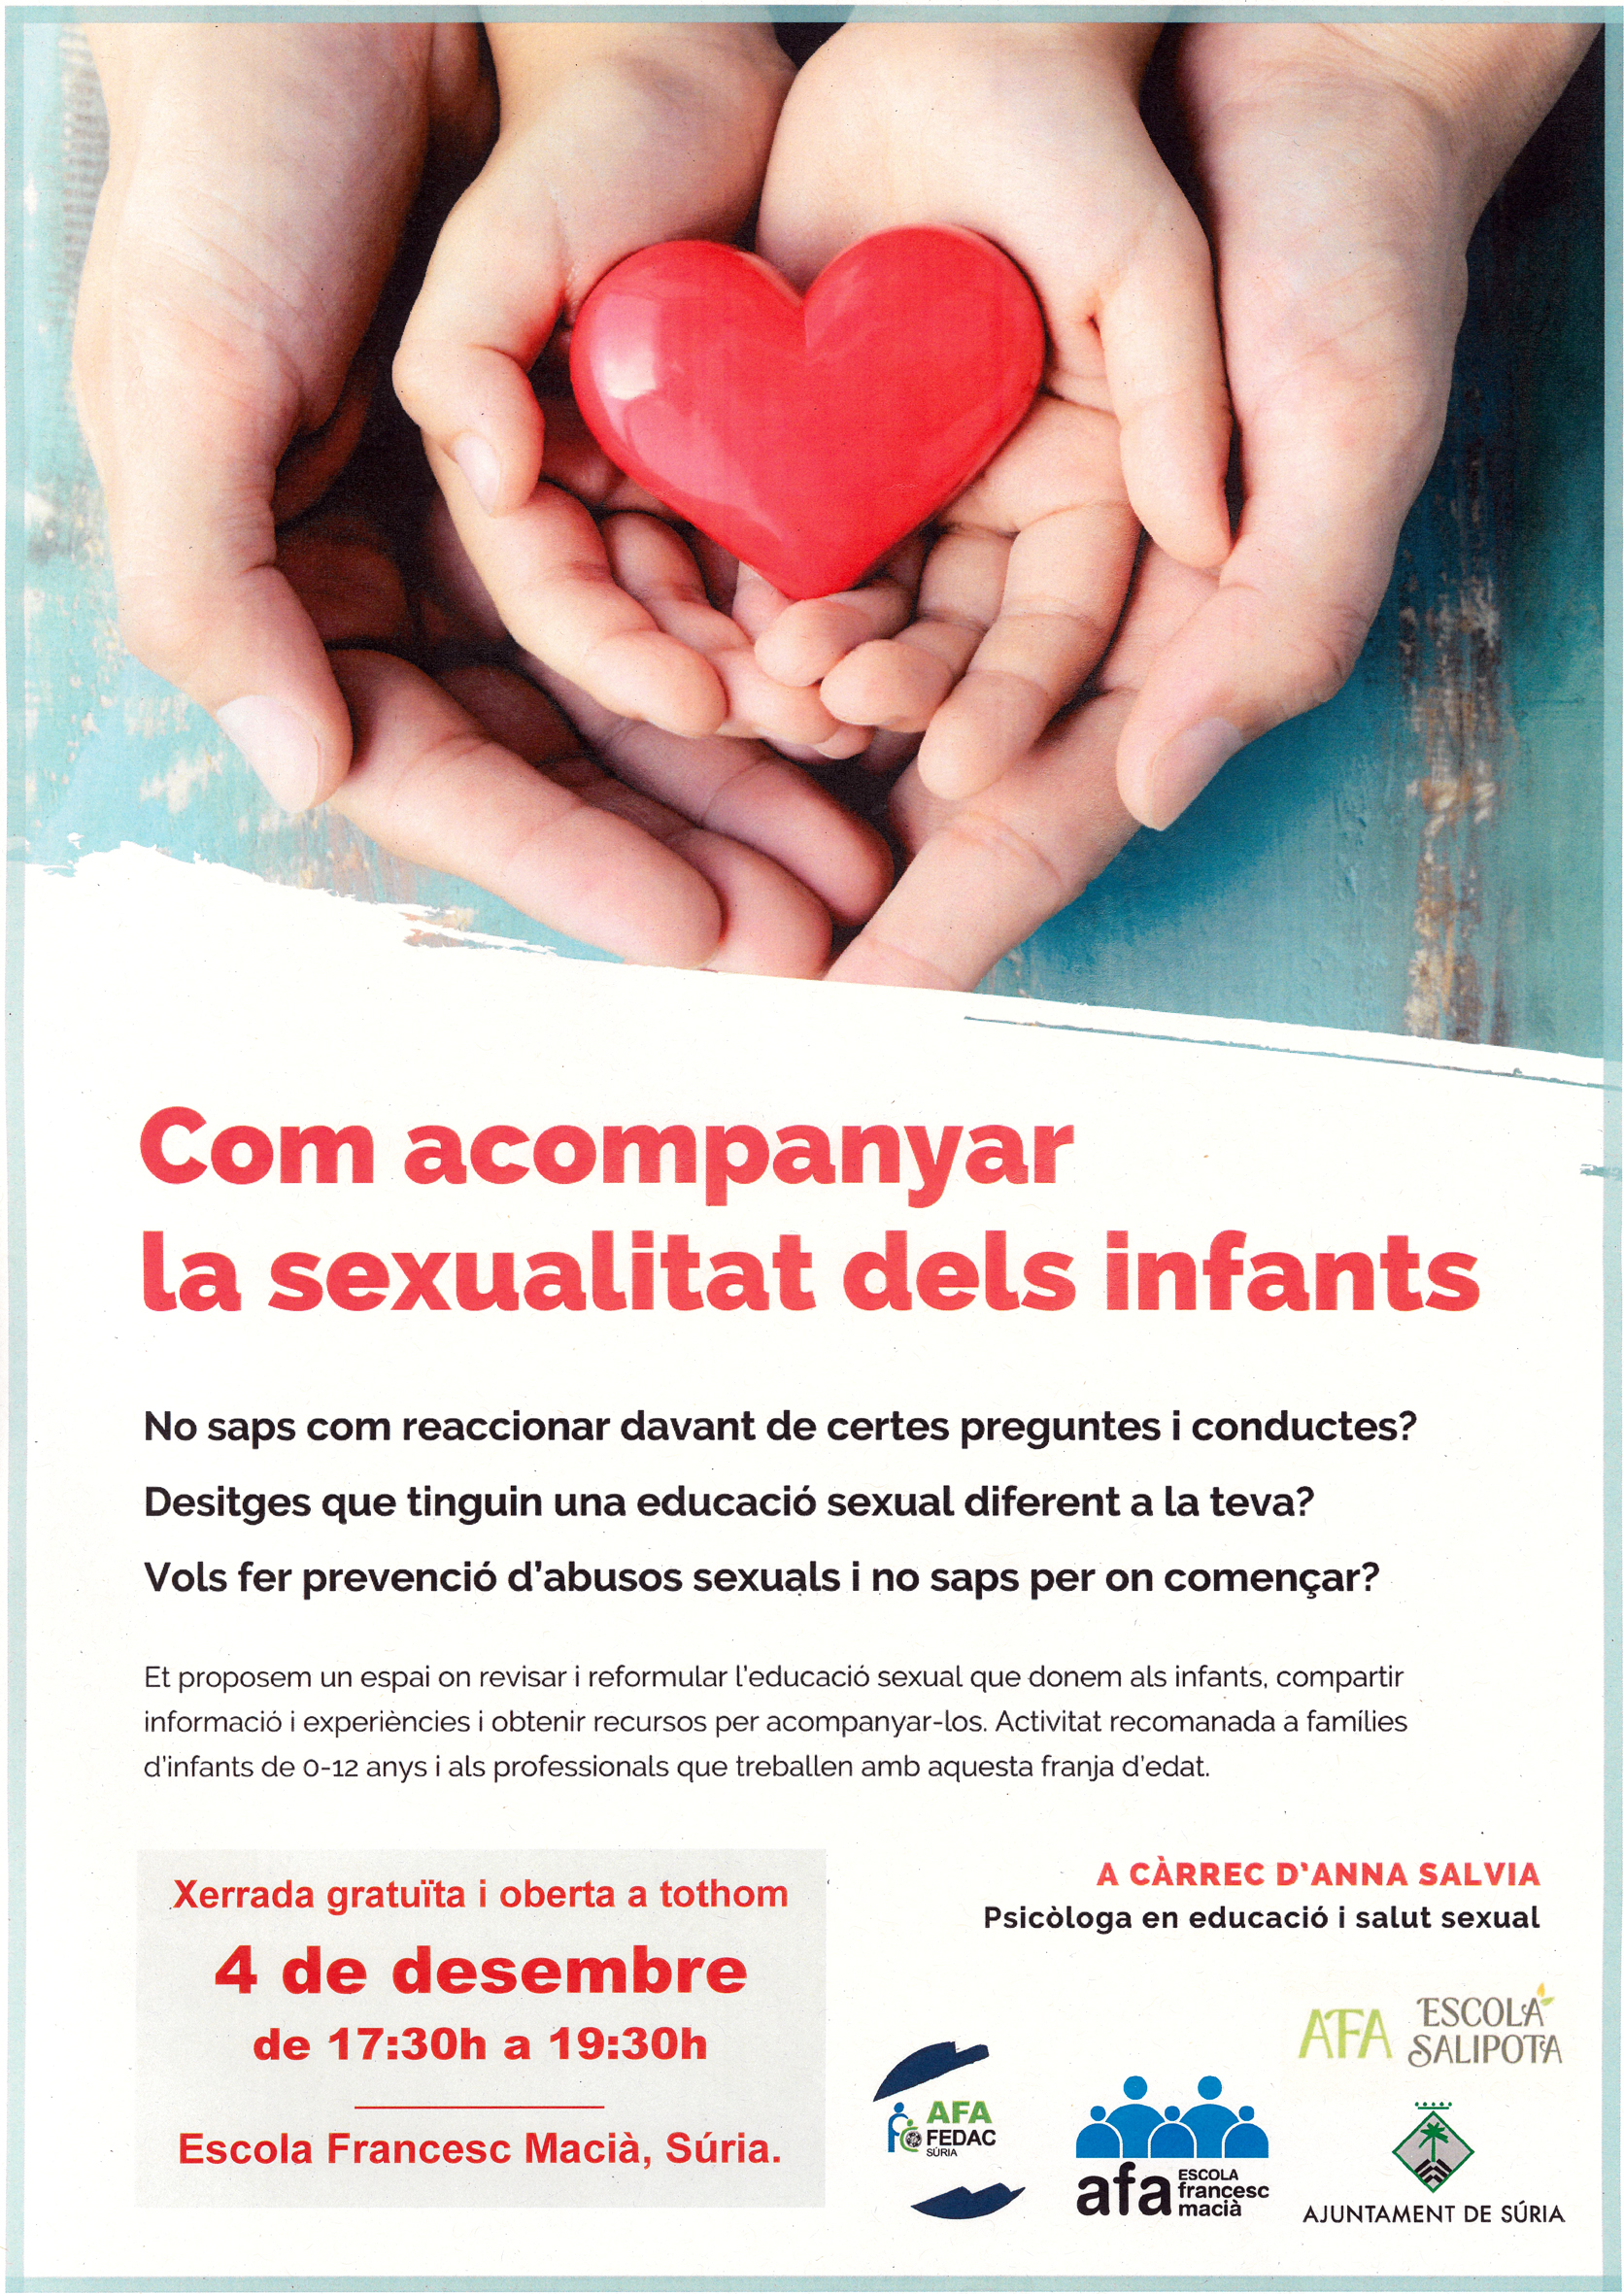 Cicle de xerrades sobre educació i salut sexual: 'Com acompanyar la sexualitat dels infants'